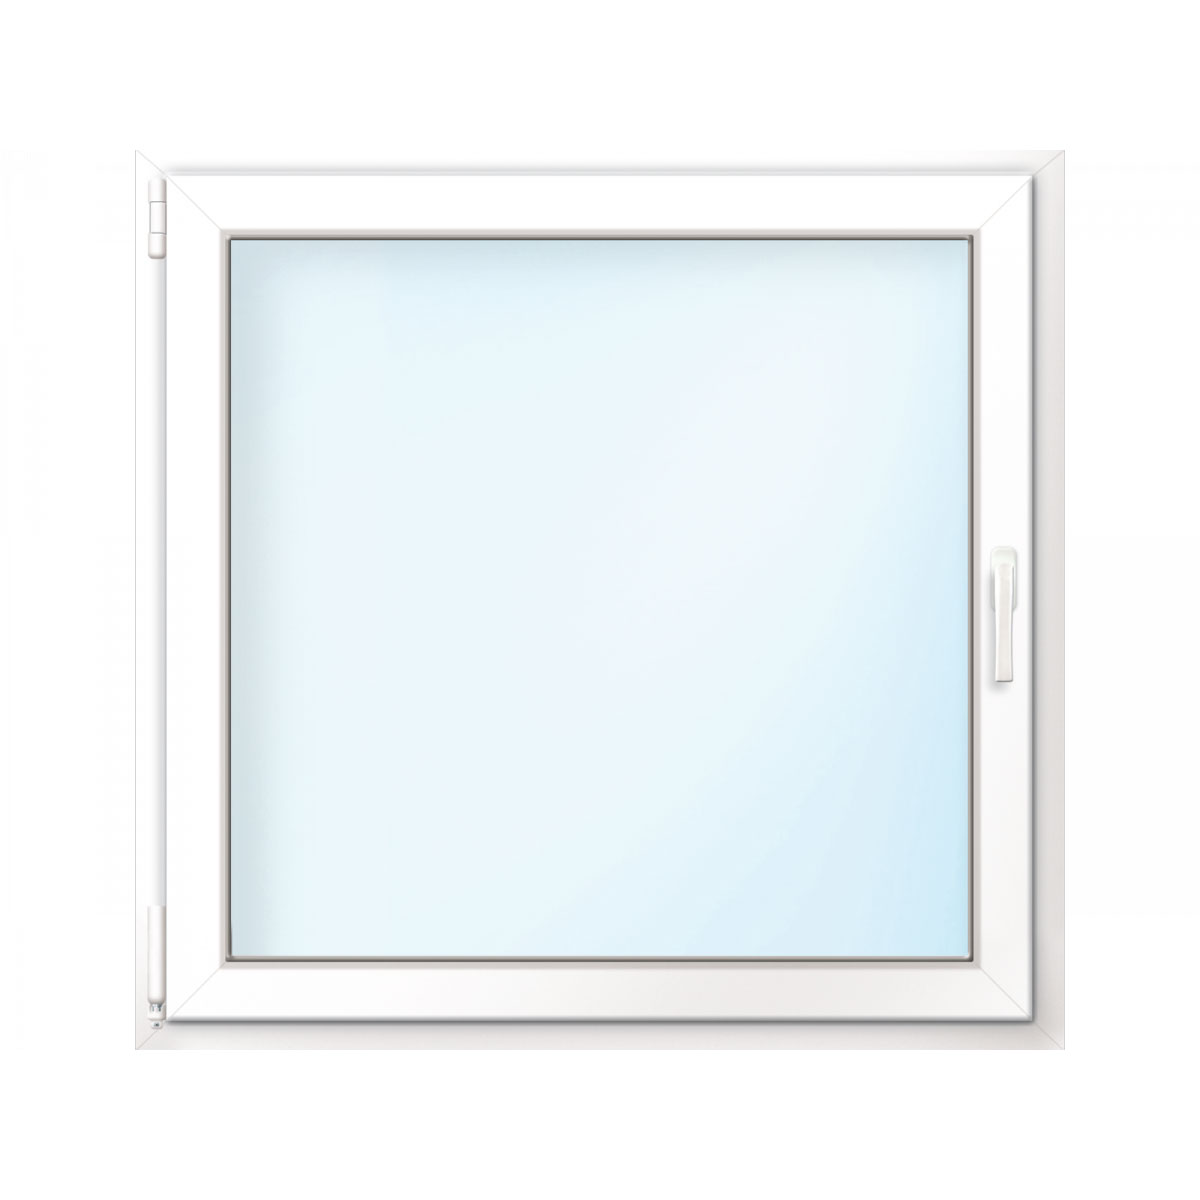 Wärmeschutz-Fenster „76/3“, 75x75 cm, weiß, Anschlag links